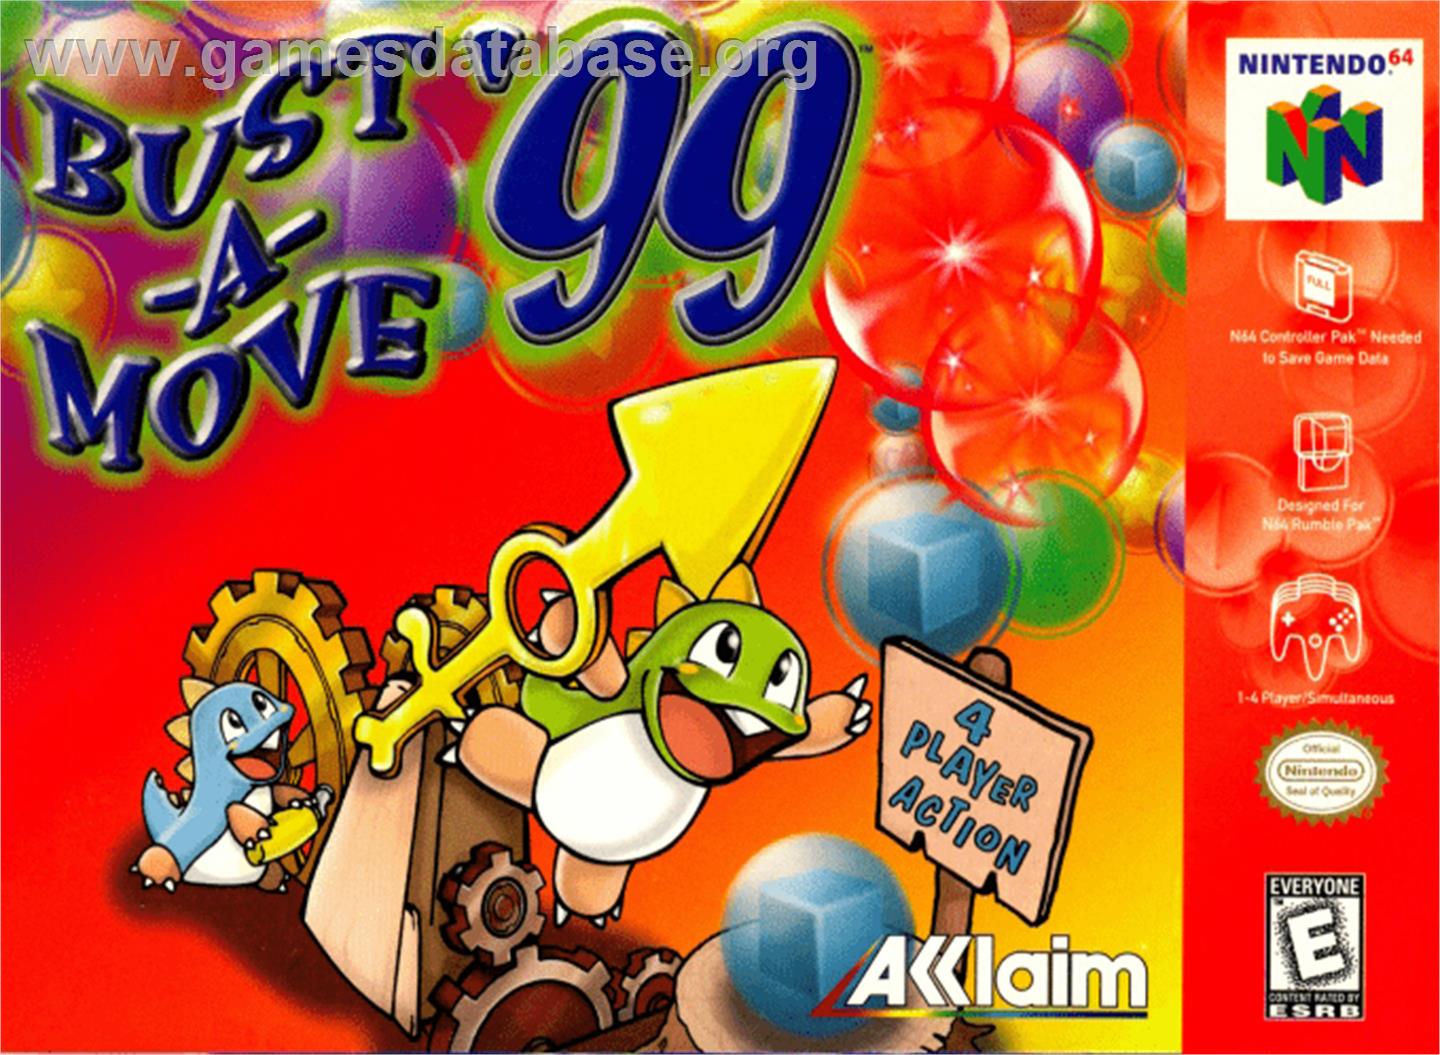 Bust a Move '99 - Nintendo N64 - Artwork - Box